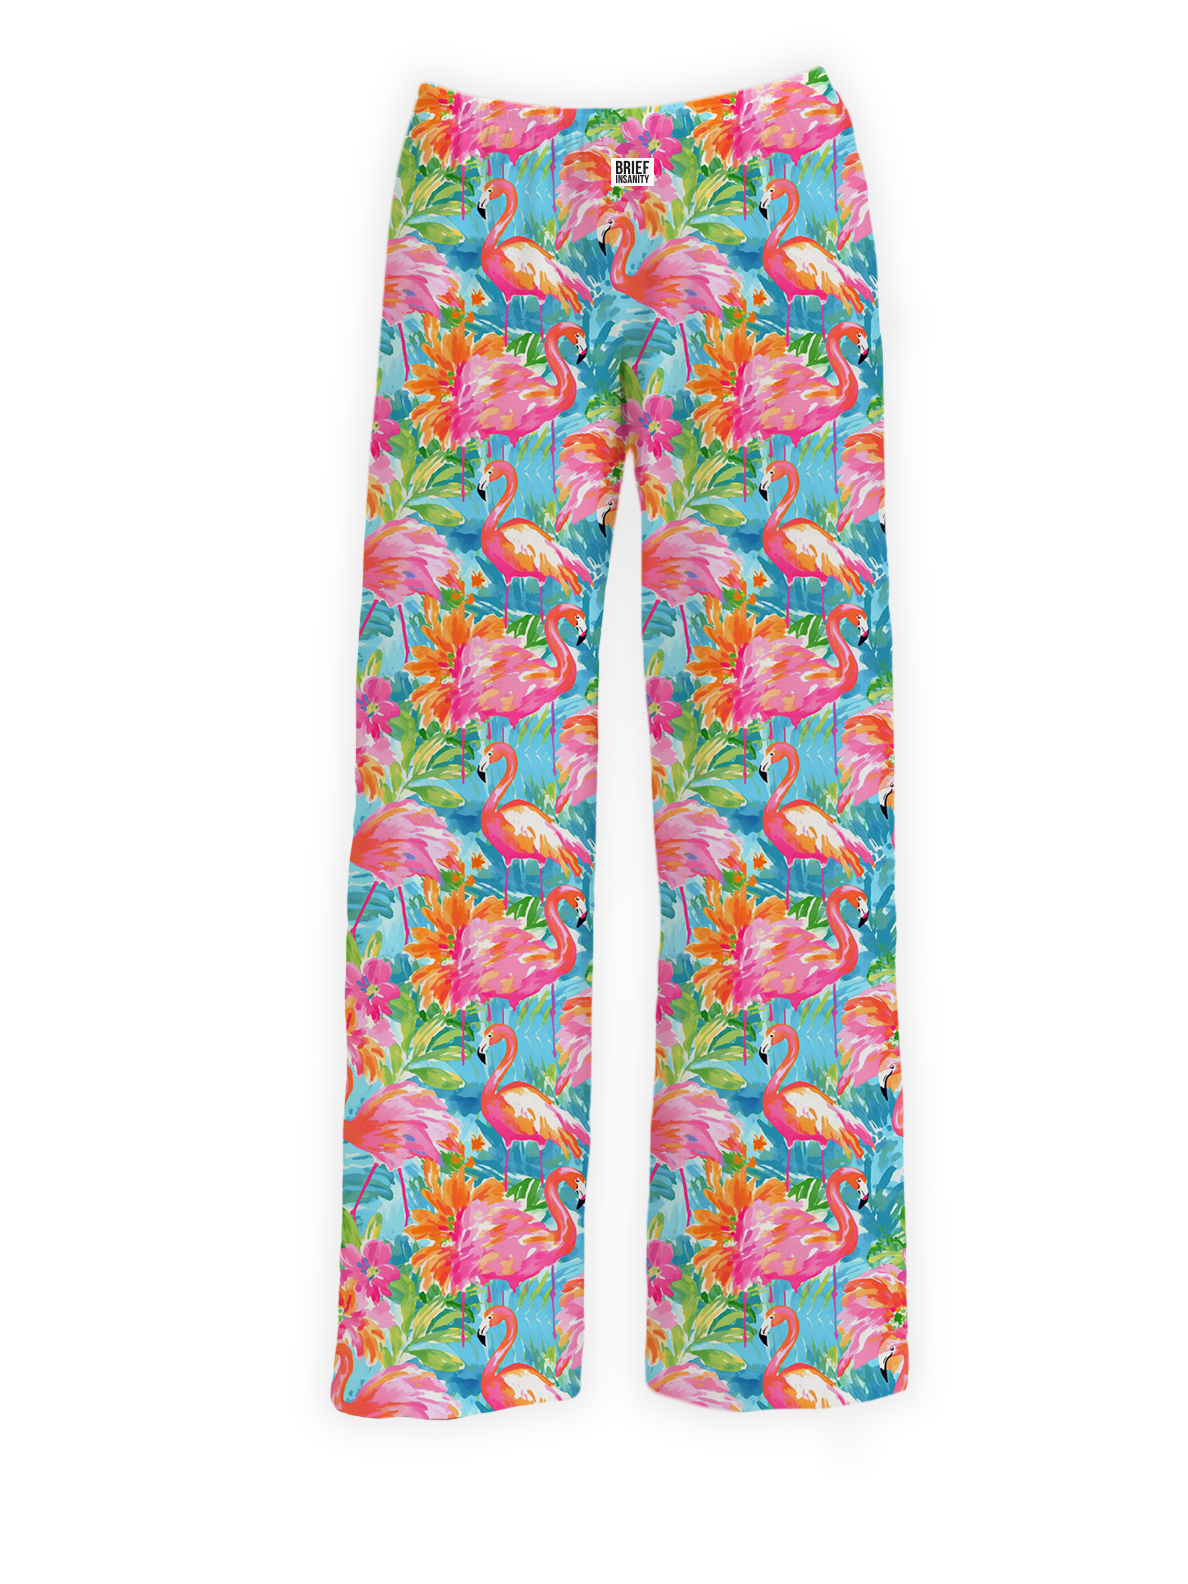 BRIEF INSANITY's Pastel Flamingo Pajama Lounge Pants